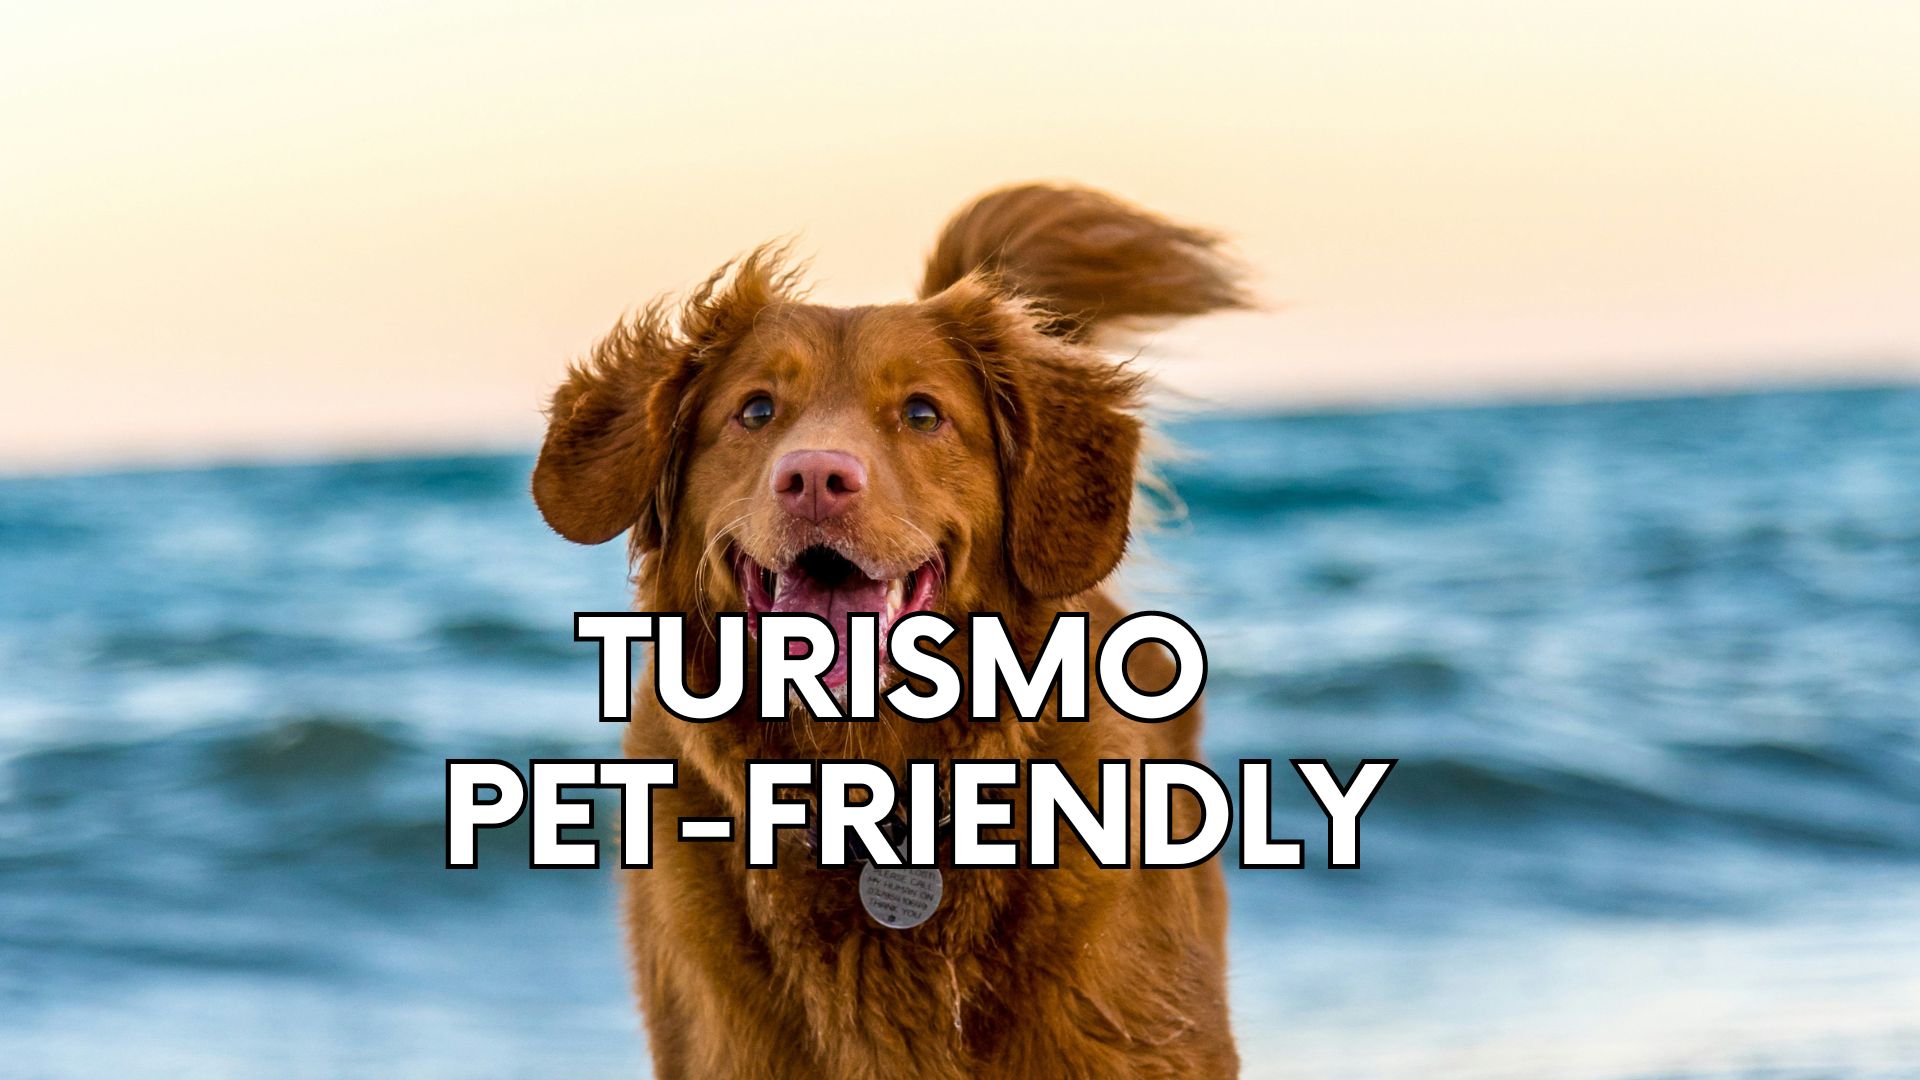 Turismo Pet-Friendly: Cómo Planificar el Viaje Perfecto con tu Perro